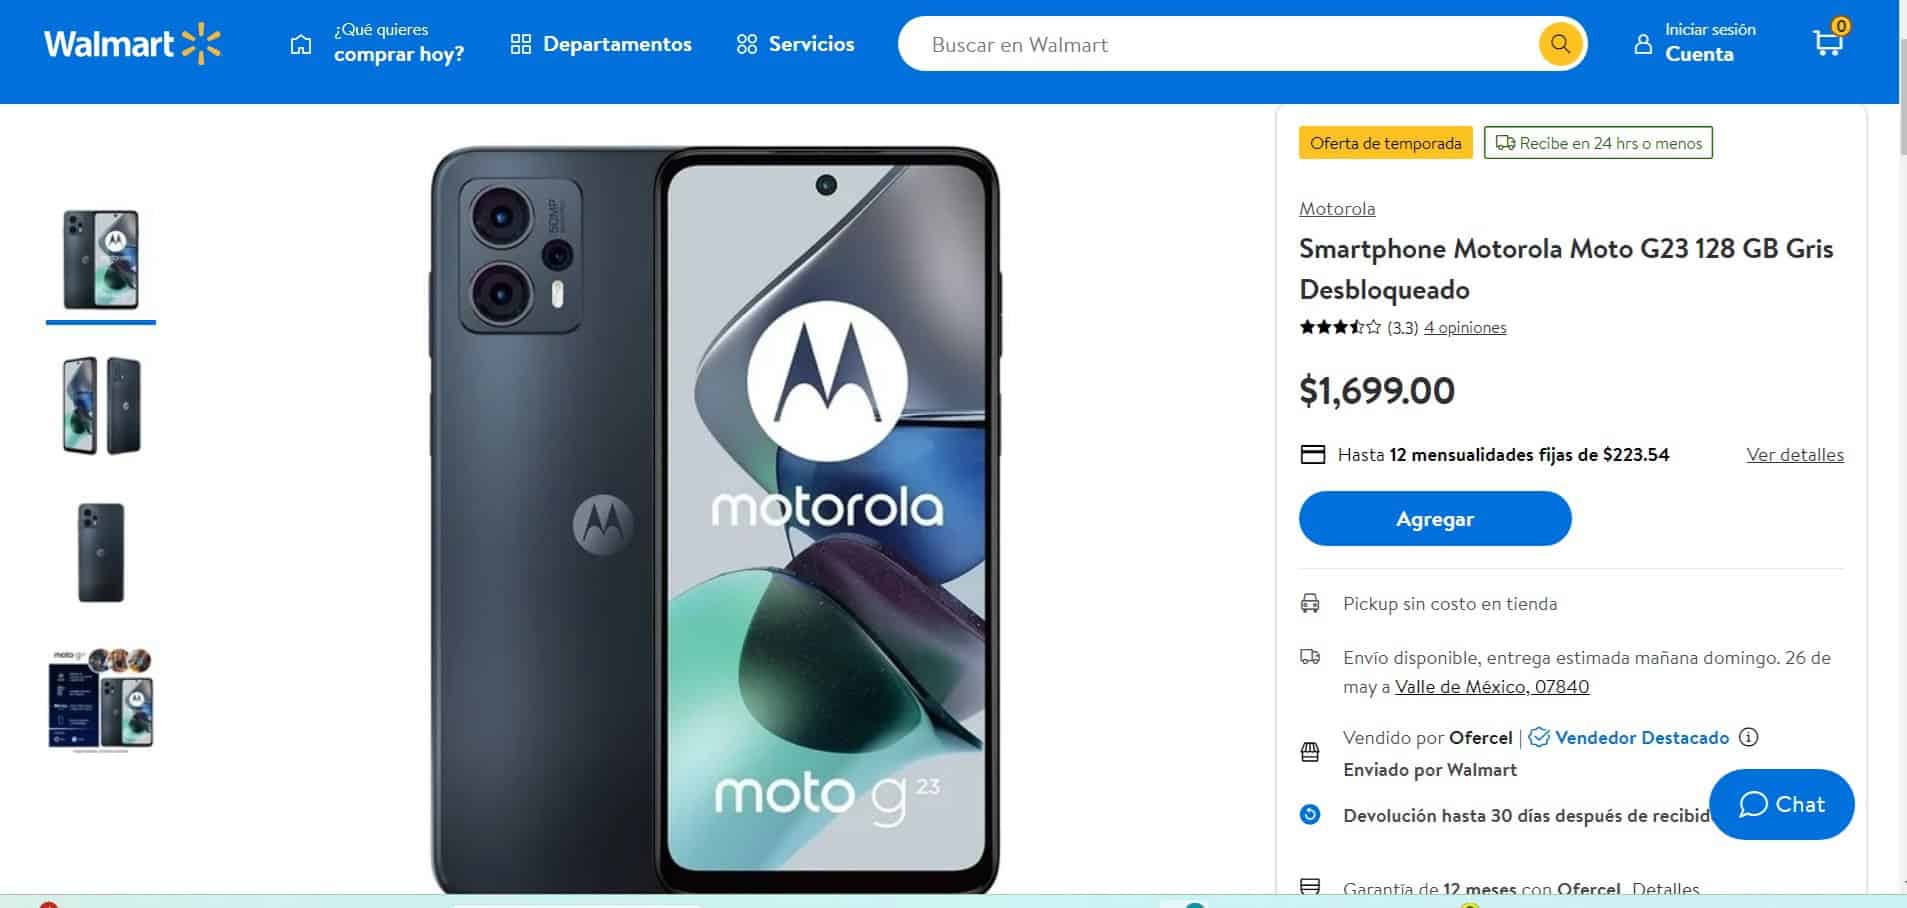 El precio de rebaja del smartphone Motorola Moto G23 en Walmart